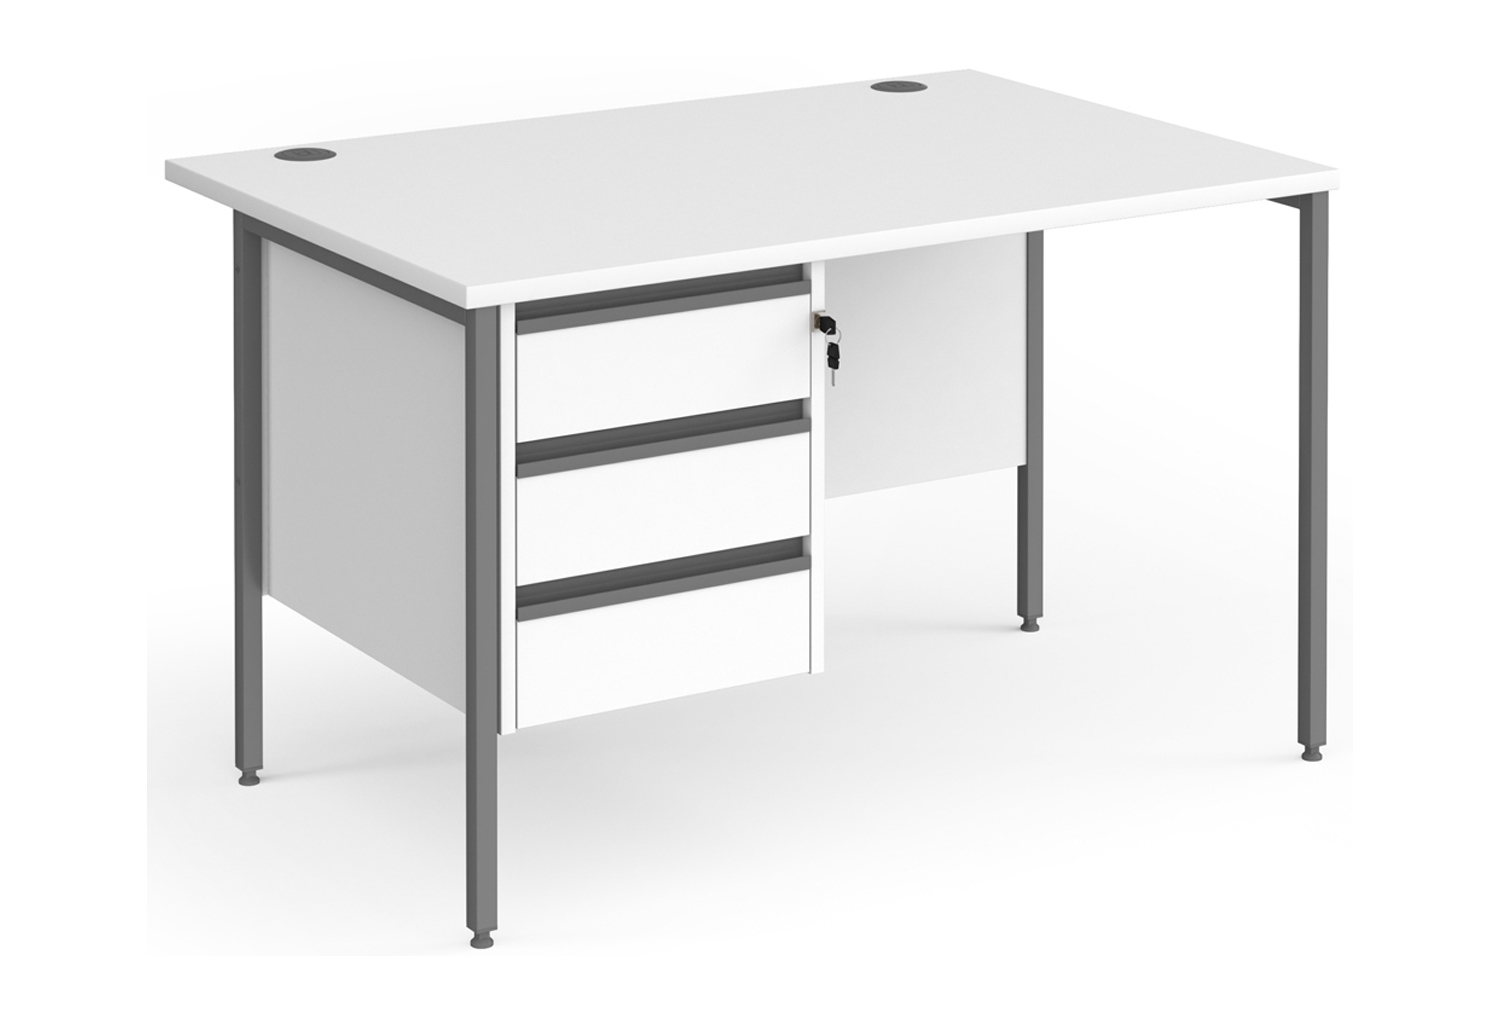 Value Line Classic+ Rectangular H-Leg Office Desk 3 Drawers (Graphite Leg), 120wx80dx73h (cm), White, Fully Installed